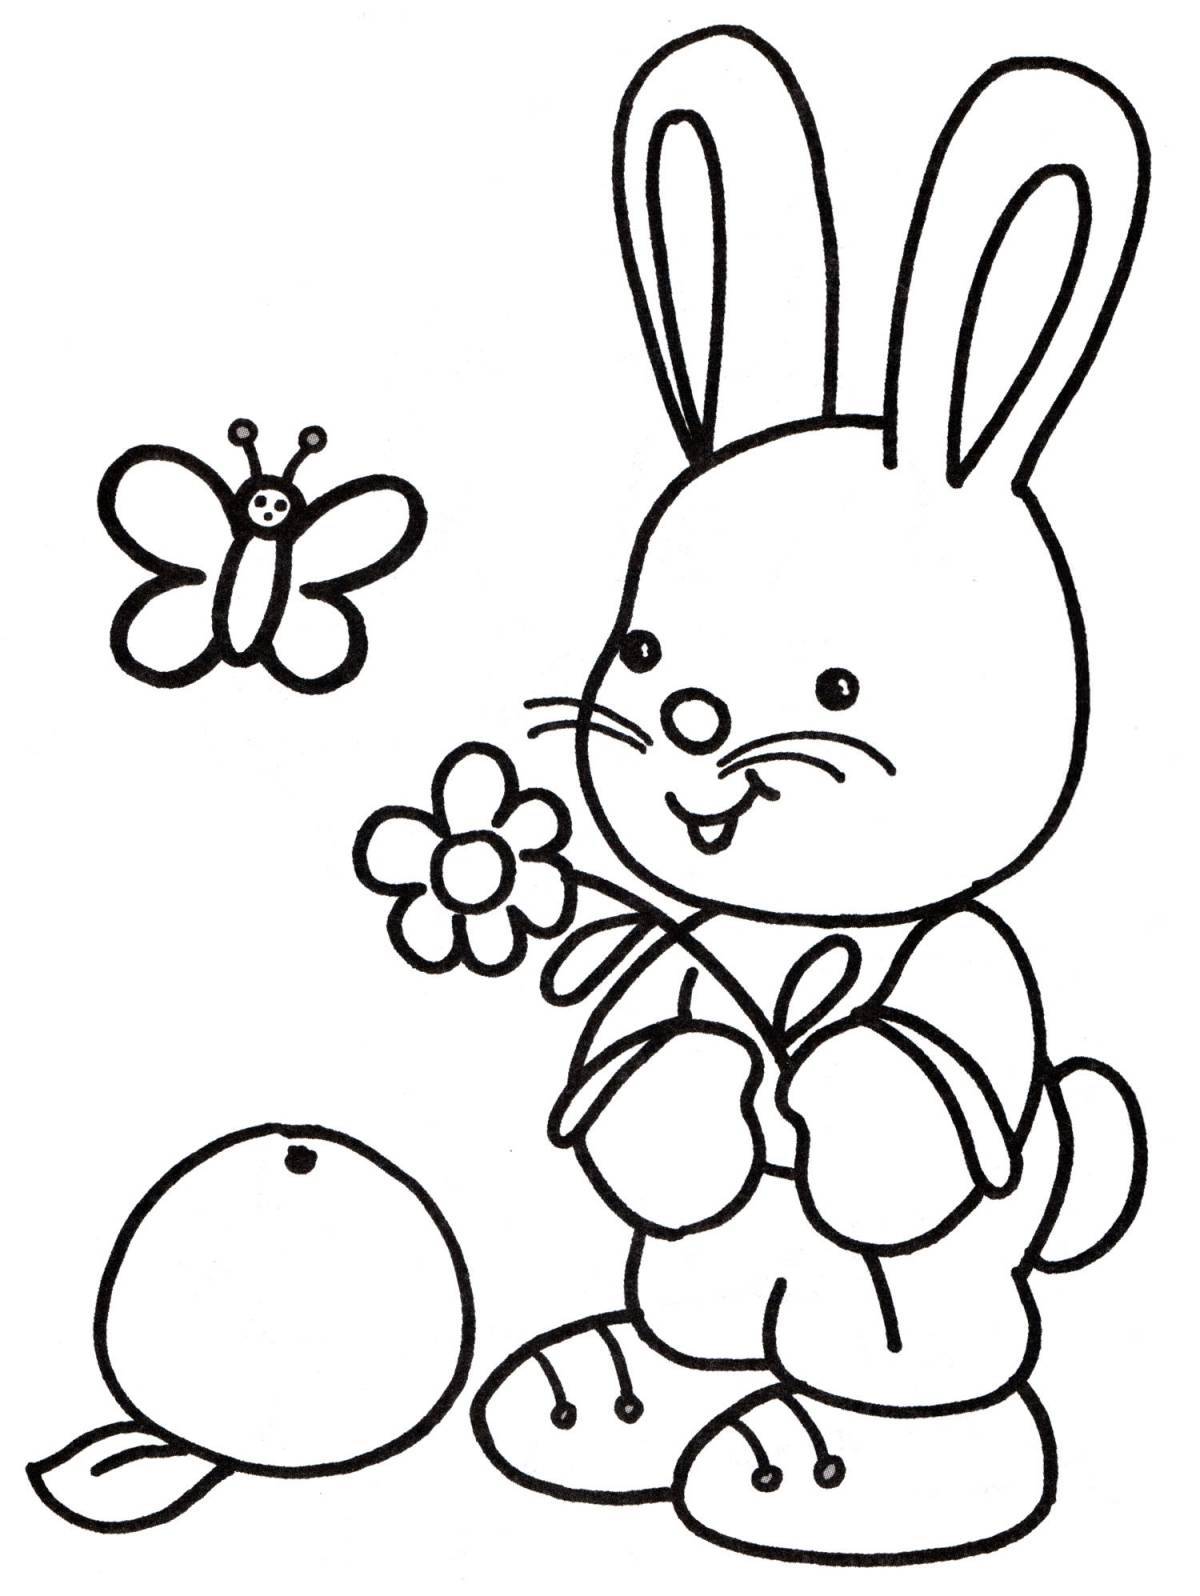 Творческая раскраска кролик для детей 3-4 лет